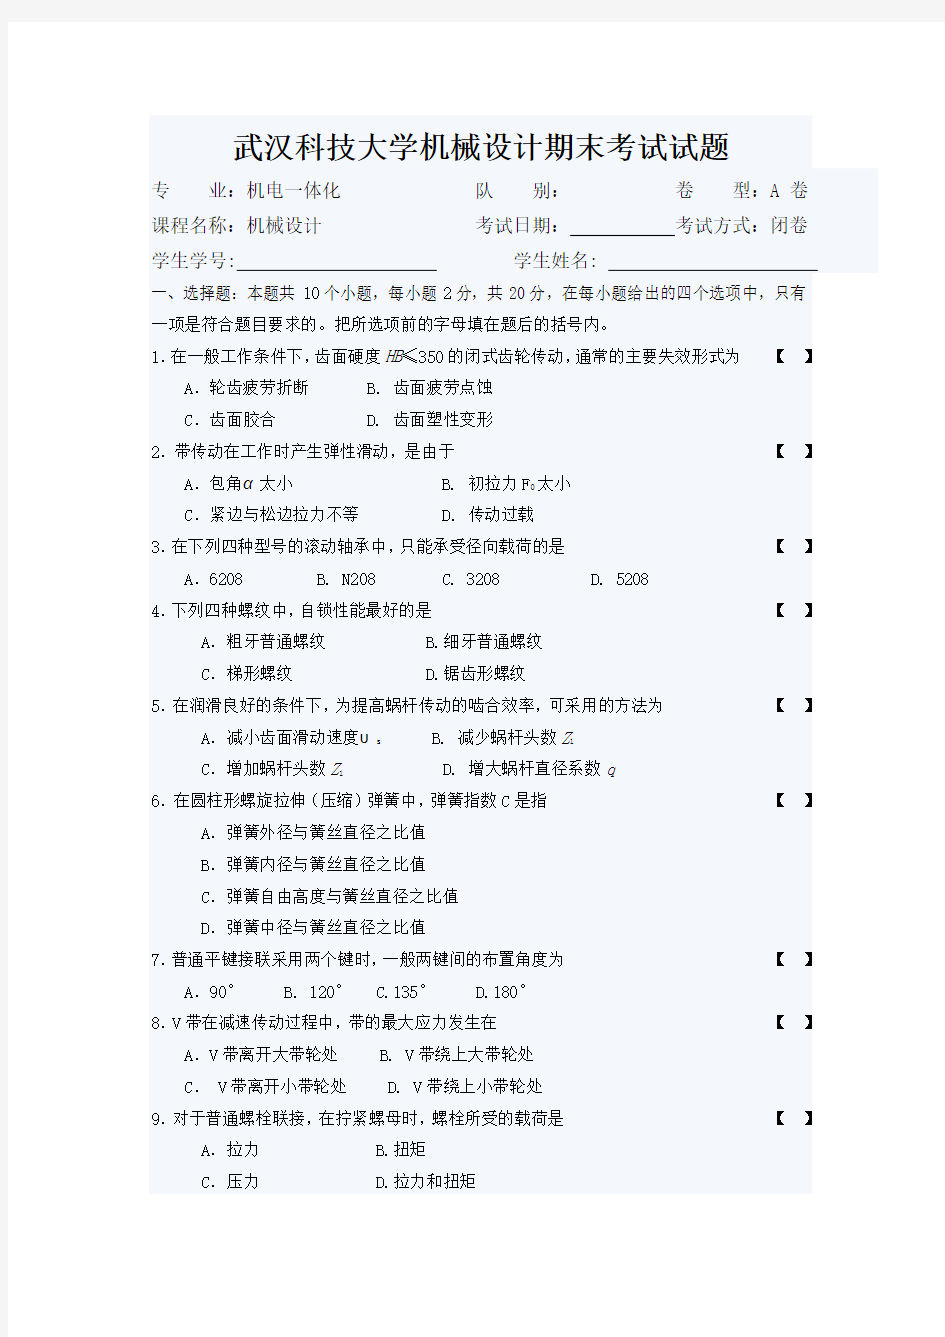 武汉科技大学机械设计期末考试试题